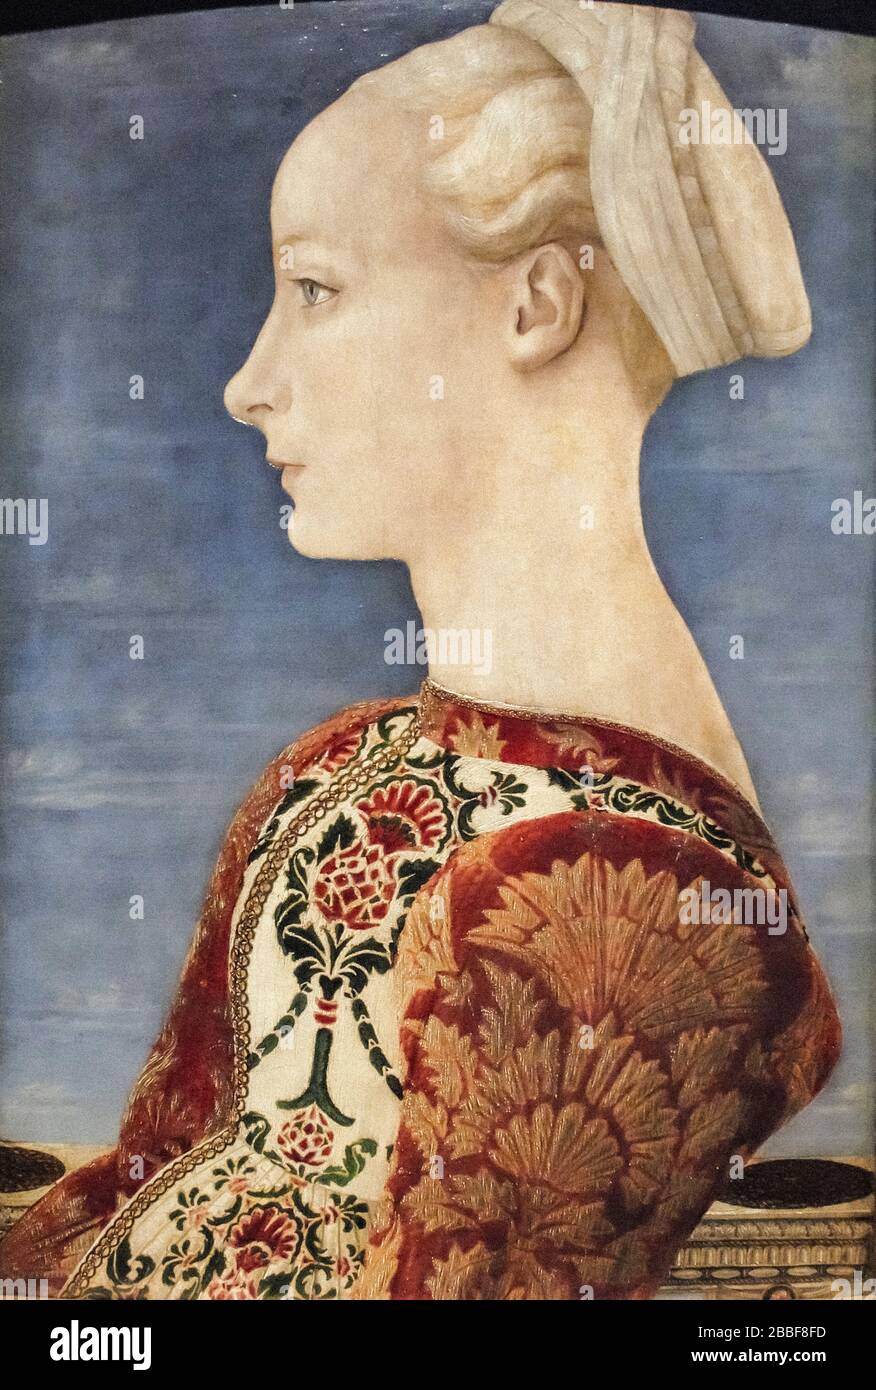 Piero del Pollaiolo, Ritratto di una giovane donna, 1465 - Berlino, Gemäldegalerie, Staatliche Museen zu Berlin, Preußischer Kulterbesitz Foto Stock